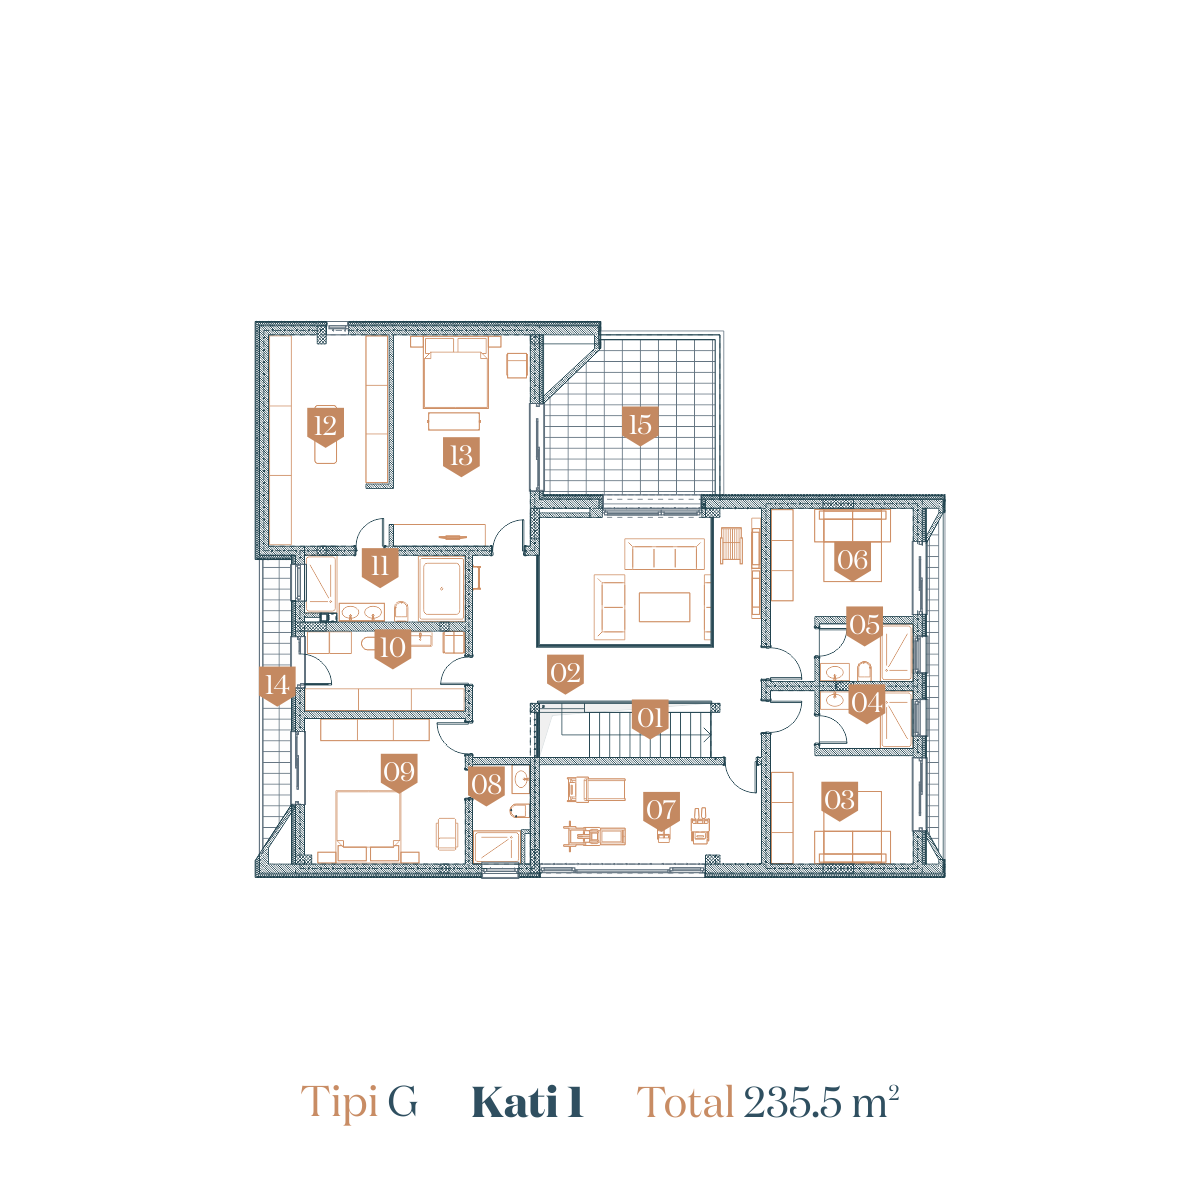 Type G - 1st Floor - Total 235.5 m2